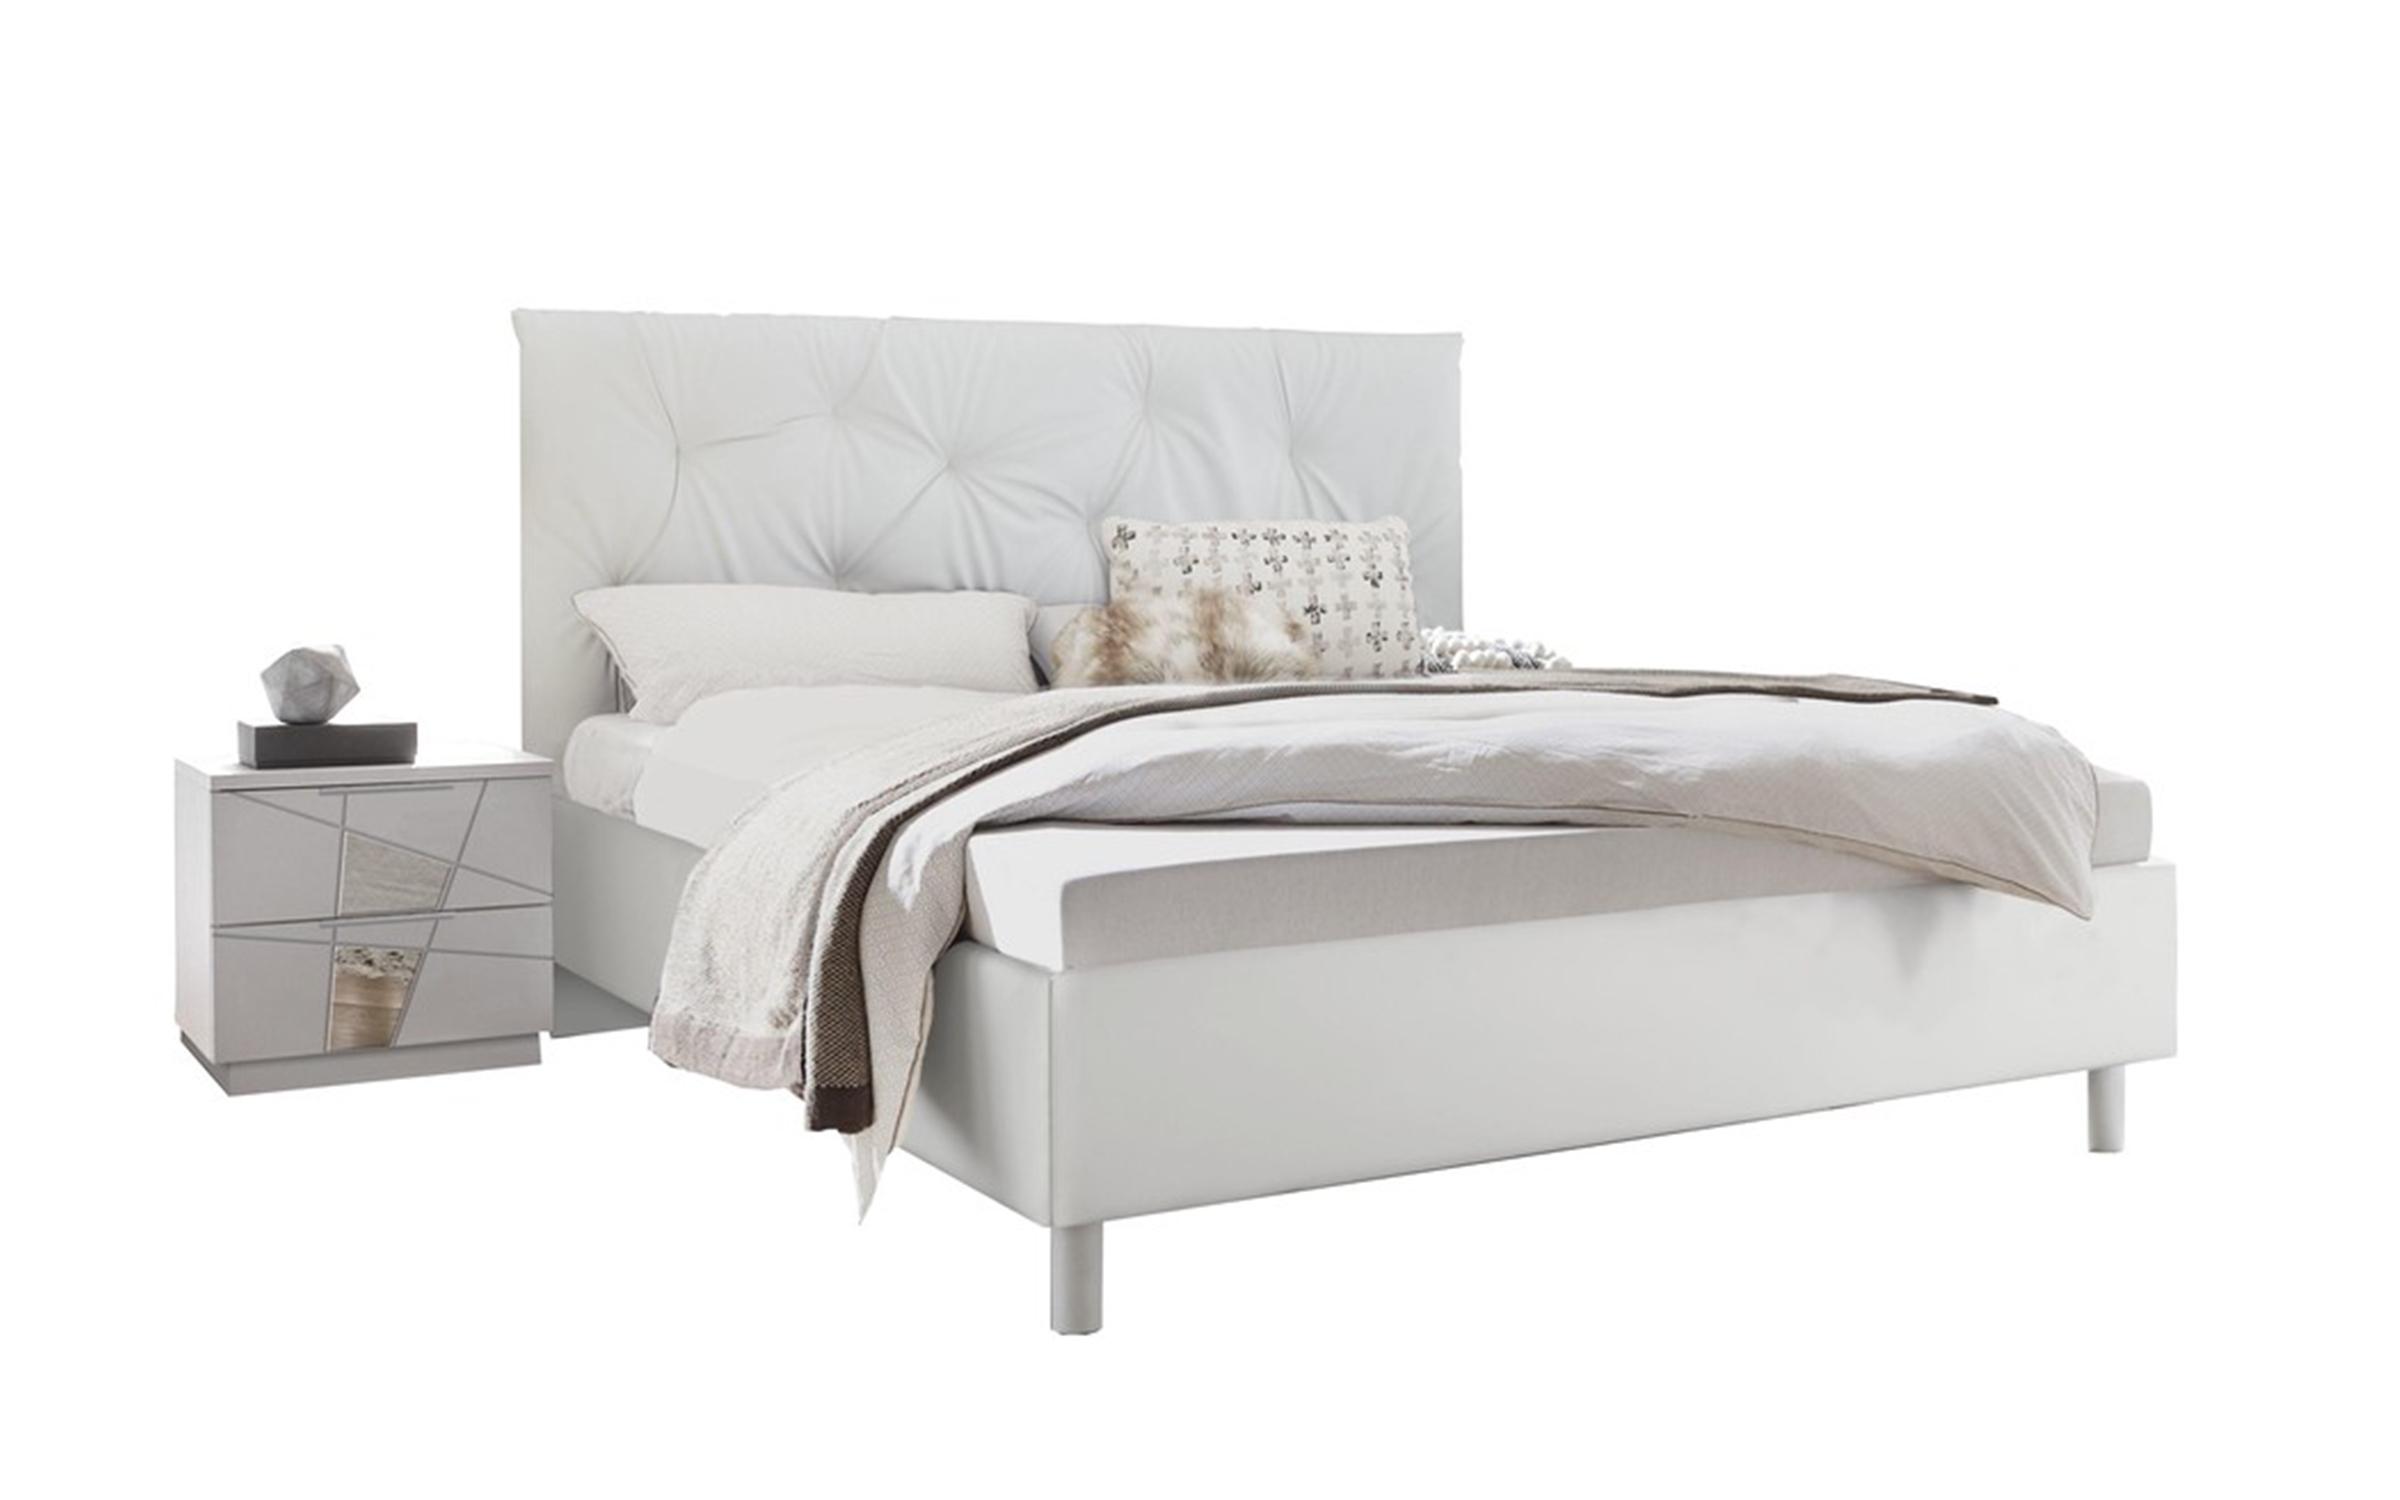 Двуспальная кровать Адалис под матрас 160/200, белый дуб + белый матовый  2